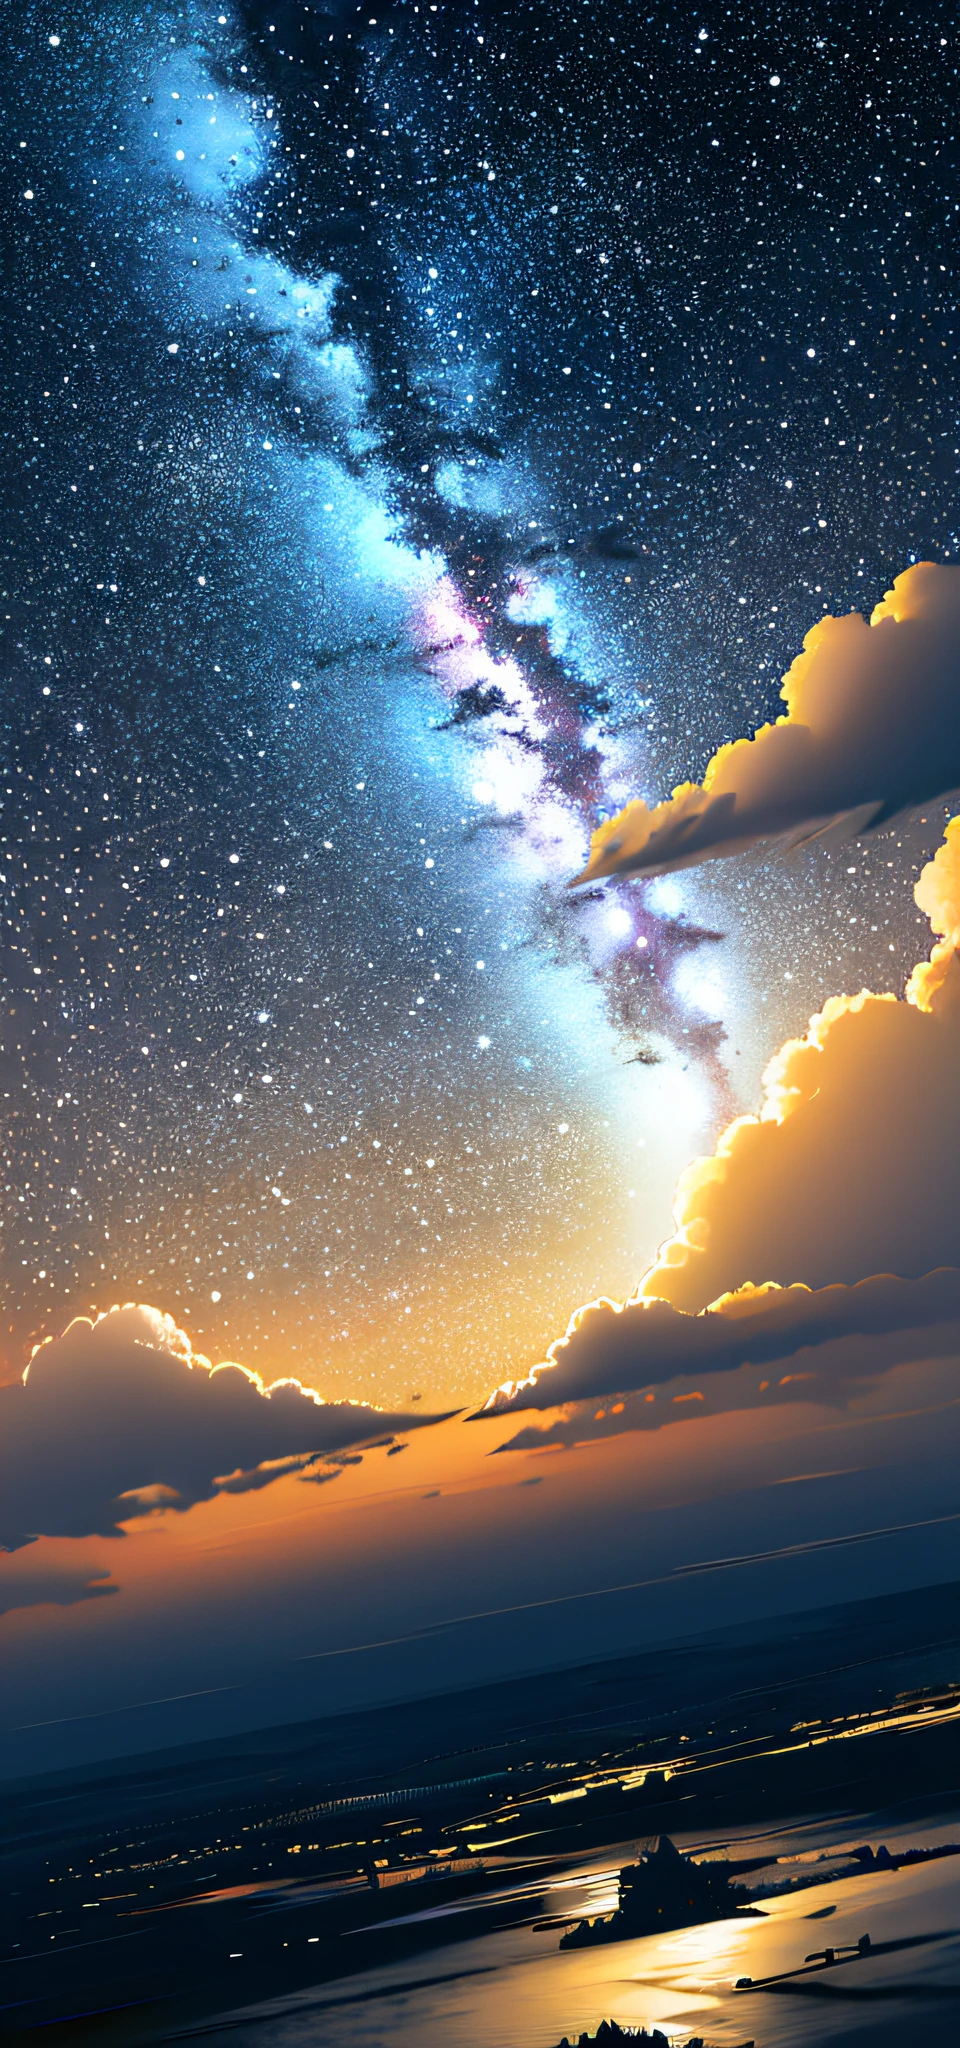 octane，CielCiel，Les étoiles（CielCiel），scène，ciel étoilé，la nuit，ciel proche，solo，extérieurs，​​des nuages，galactique，silhouette